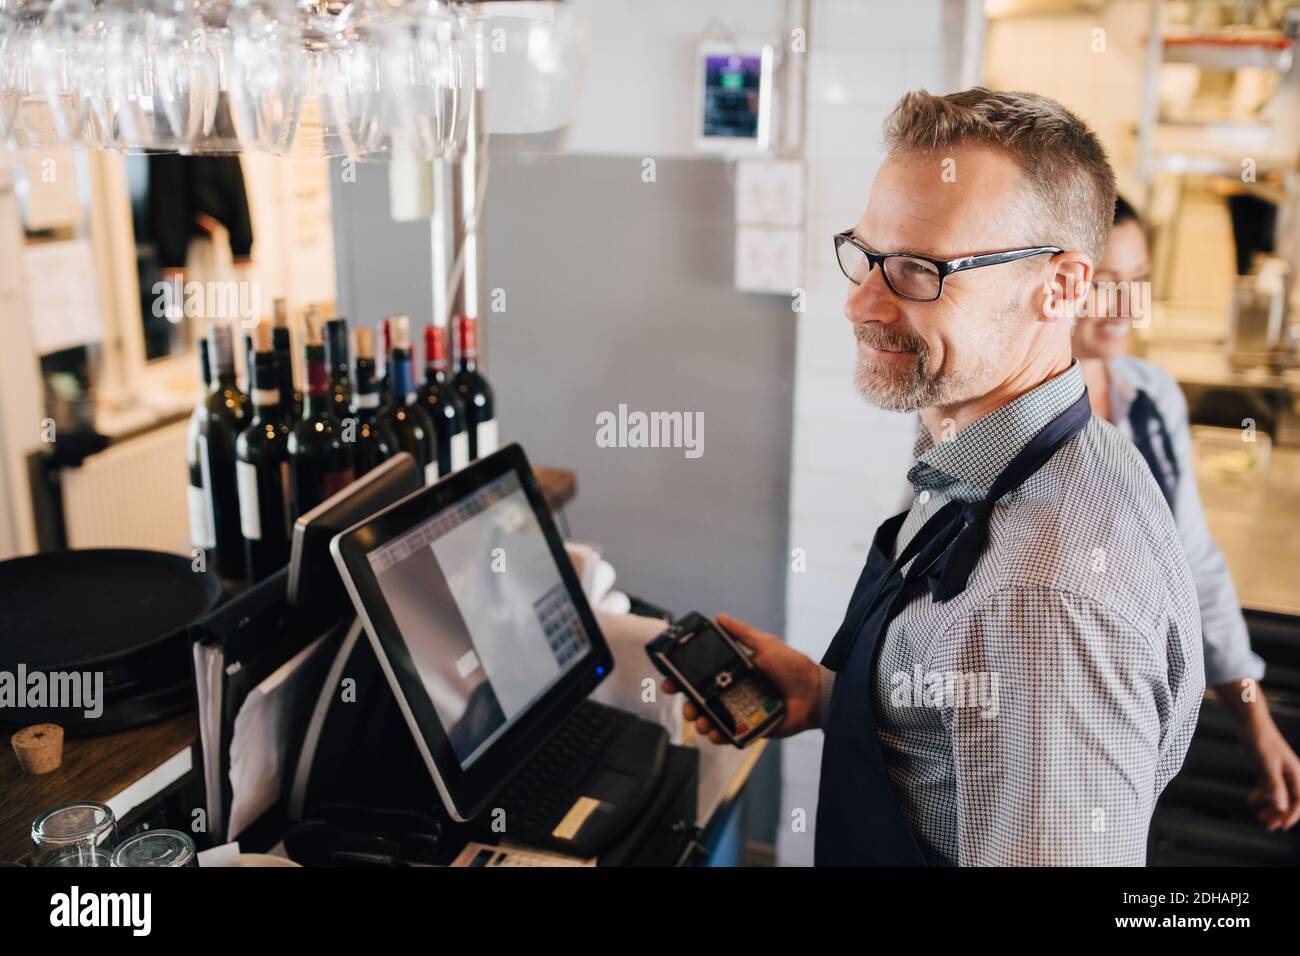 Lächelnder Mann, der Computer benutzt, während er den Kreditkartenleser in der Hand hält Restaurant Stockfoto